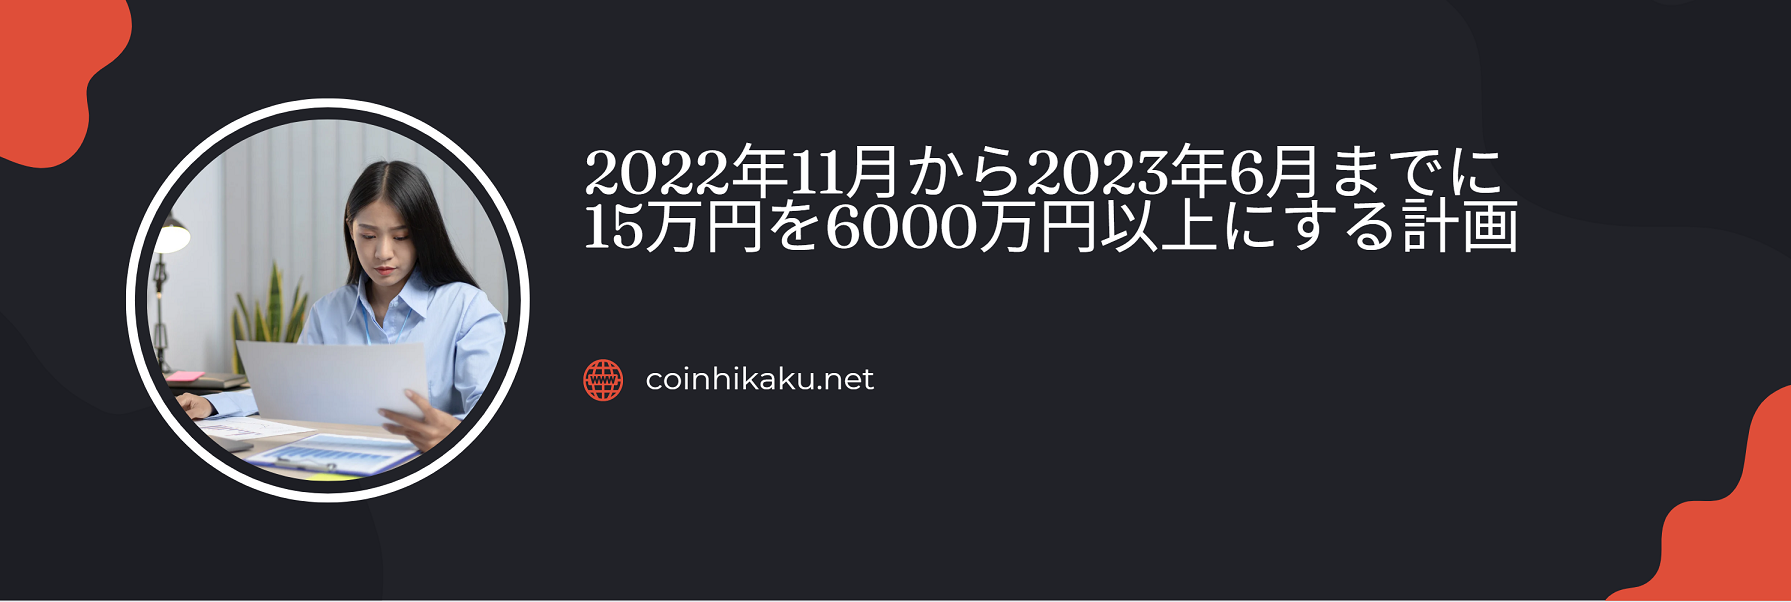 仮想通貨で2022年11月からの半年で15万円を6千万以上にする計画